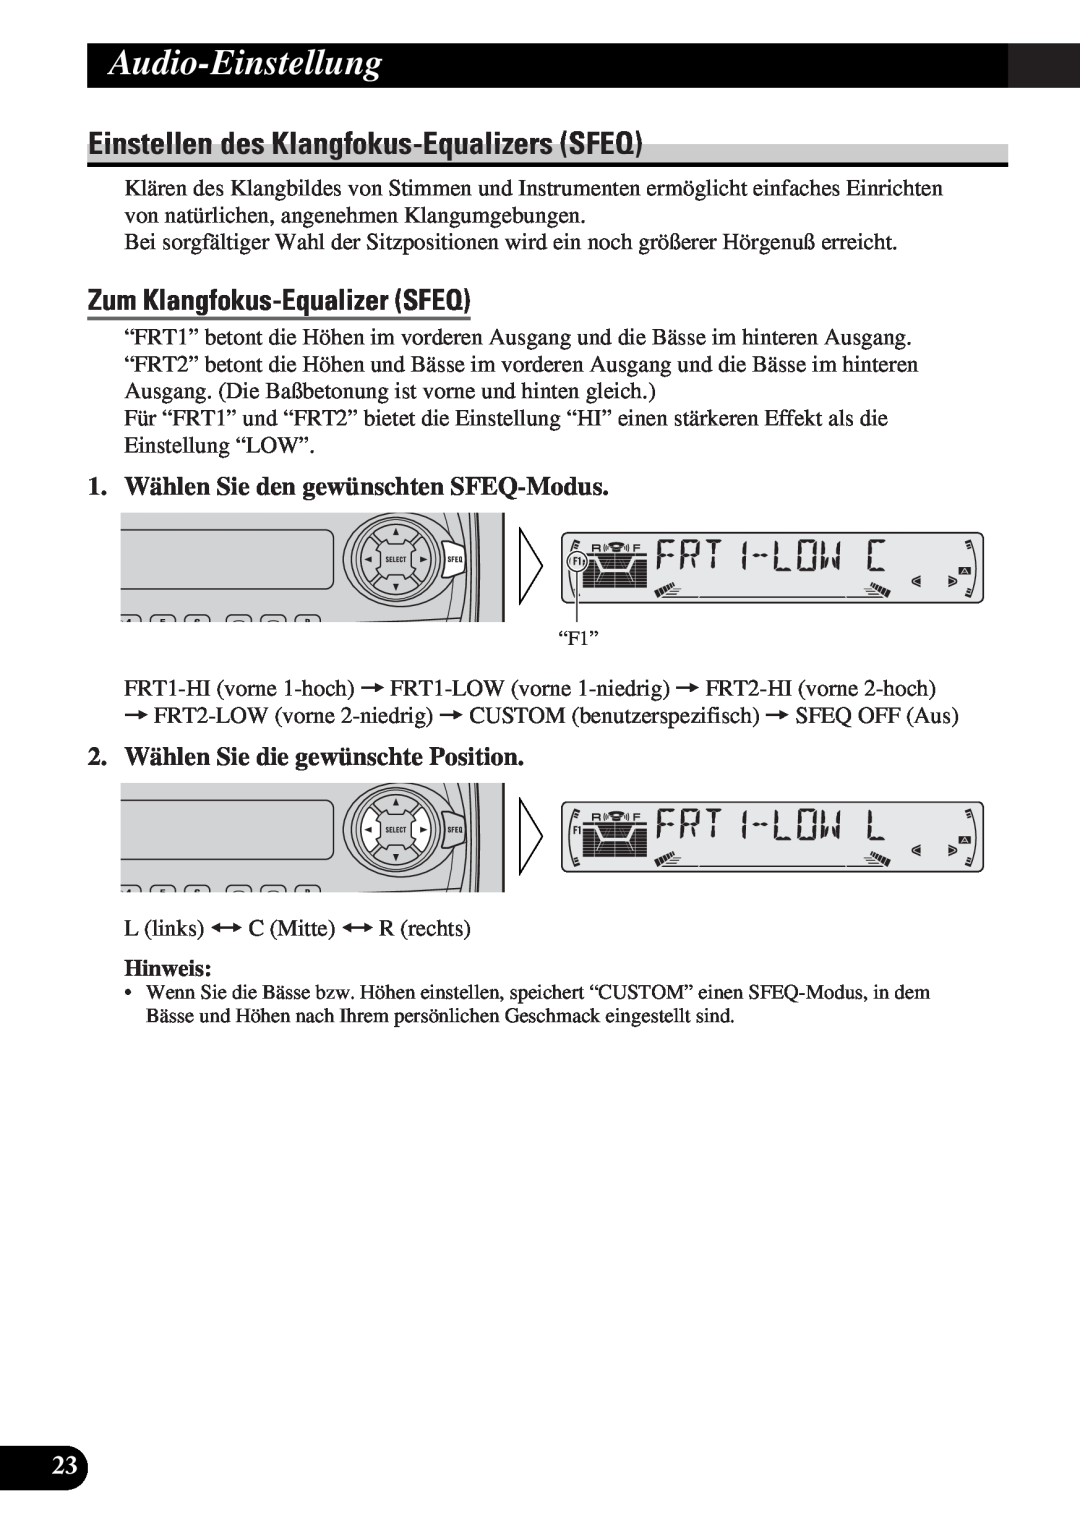 Pioneer DEH-3330R Audio-Einstellung, Einstellen des Klangfokus-EqualizersSFEQ, Zum Klangfokus-EqualizerSFEQ, Hinweis 